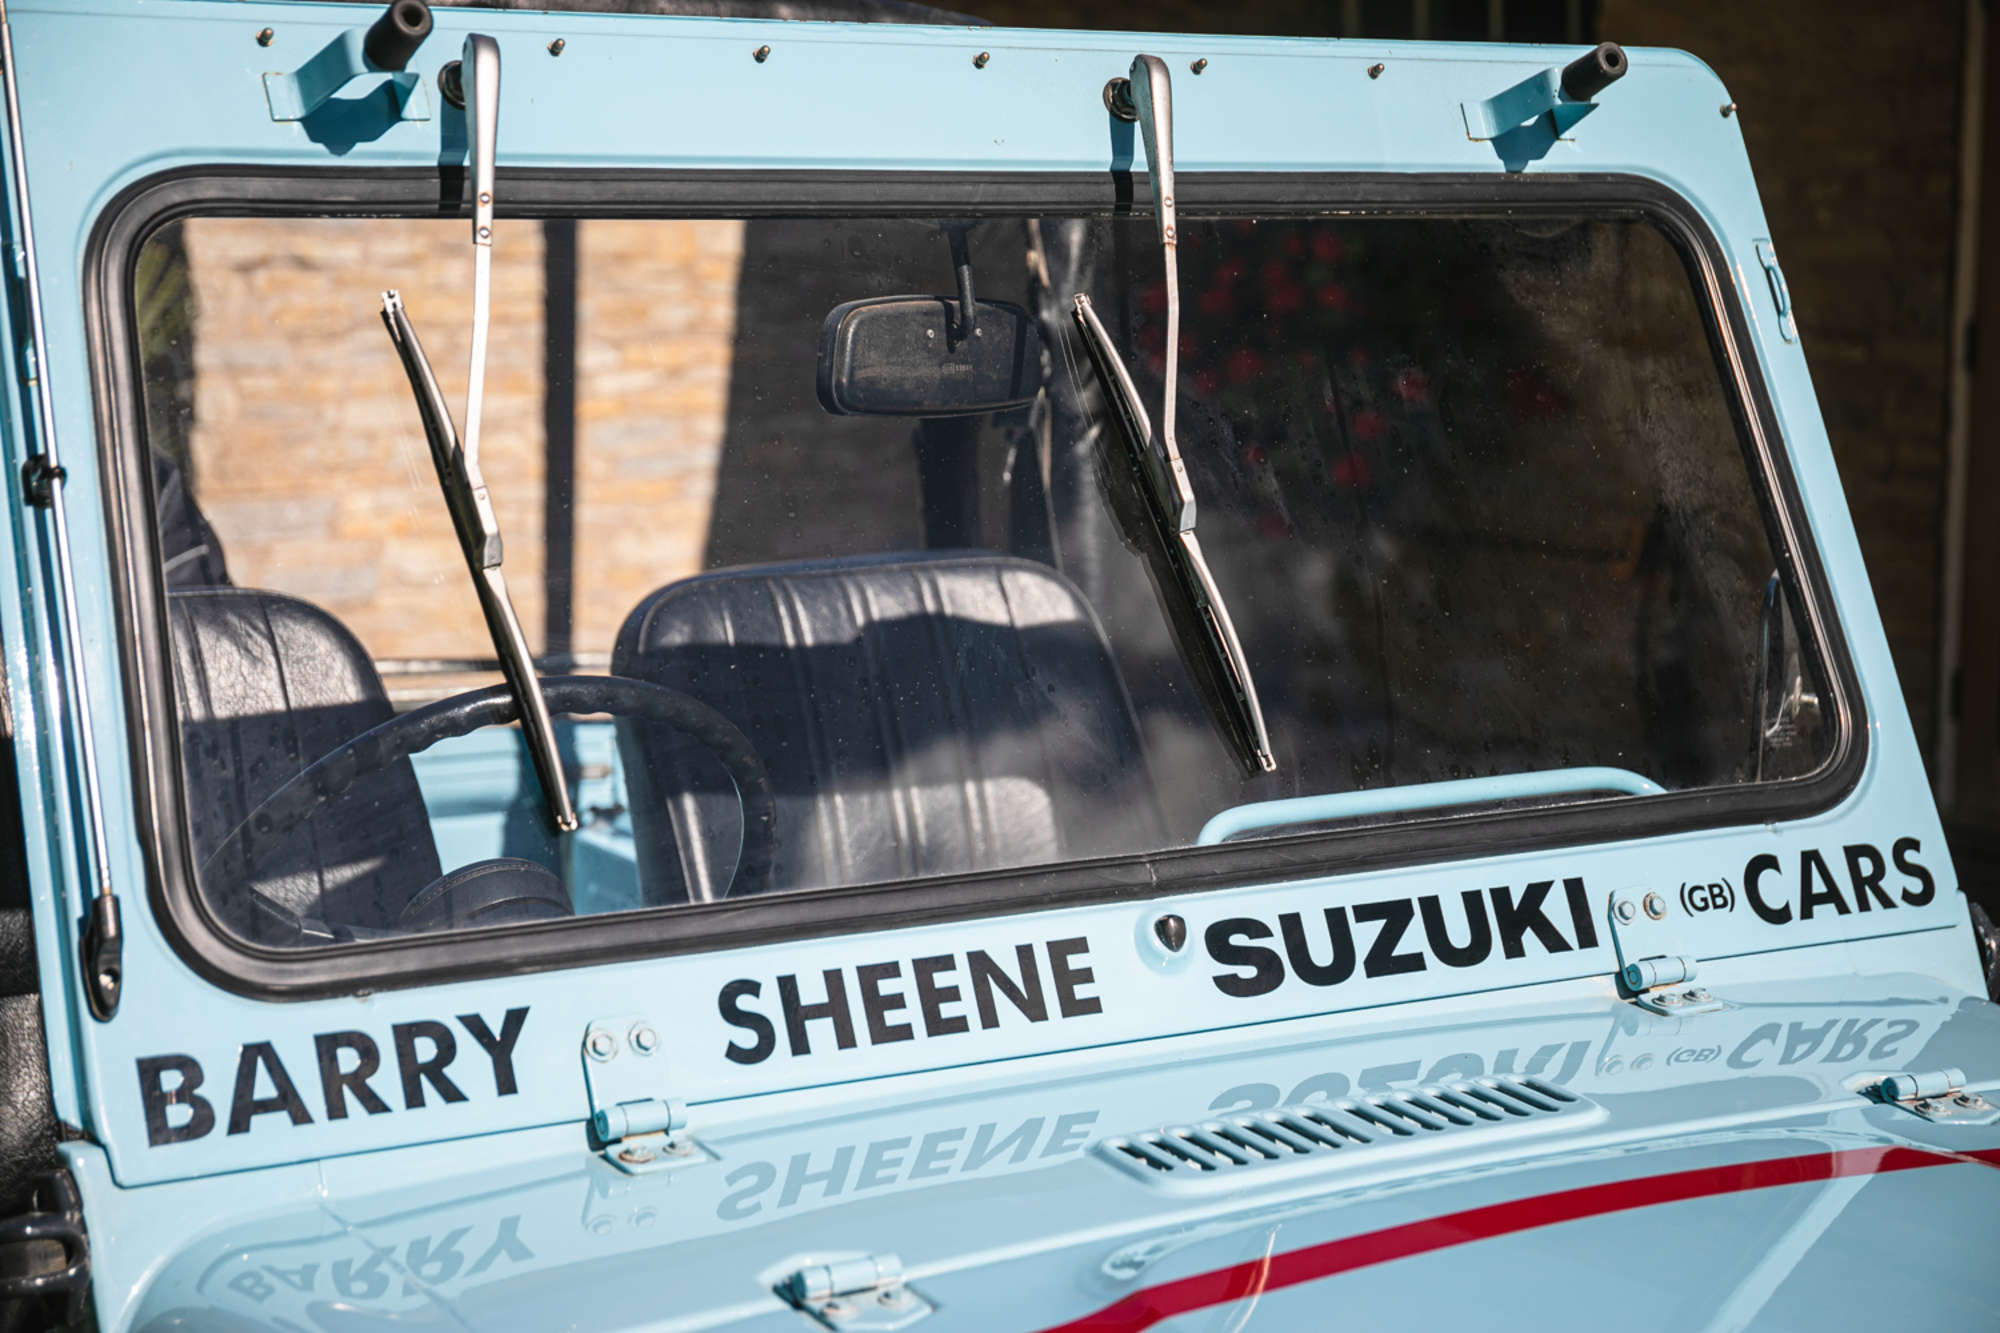 Barry Sheene Suzuki Cars